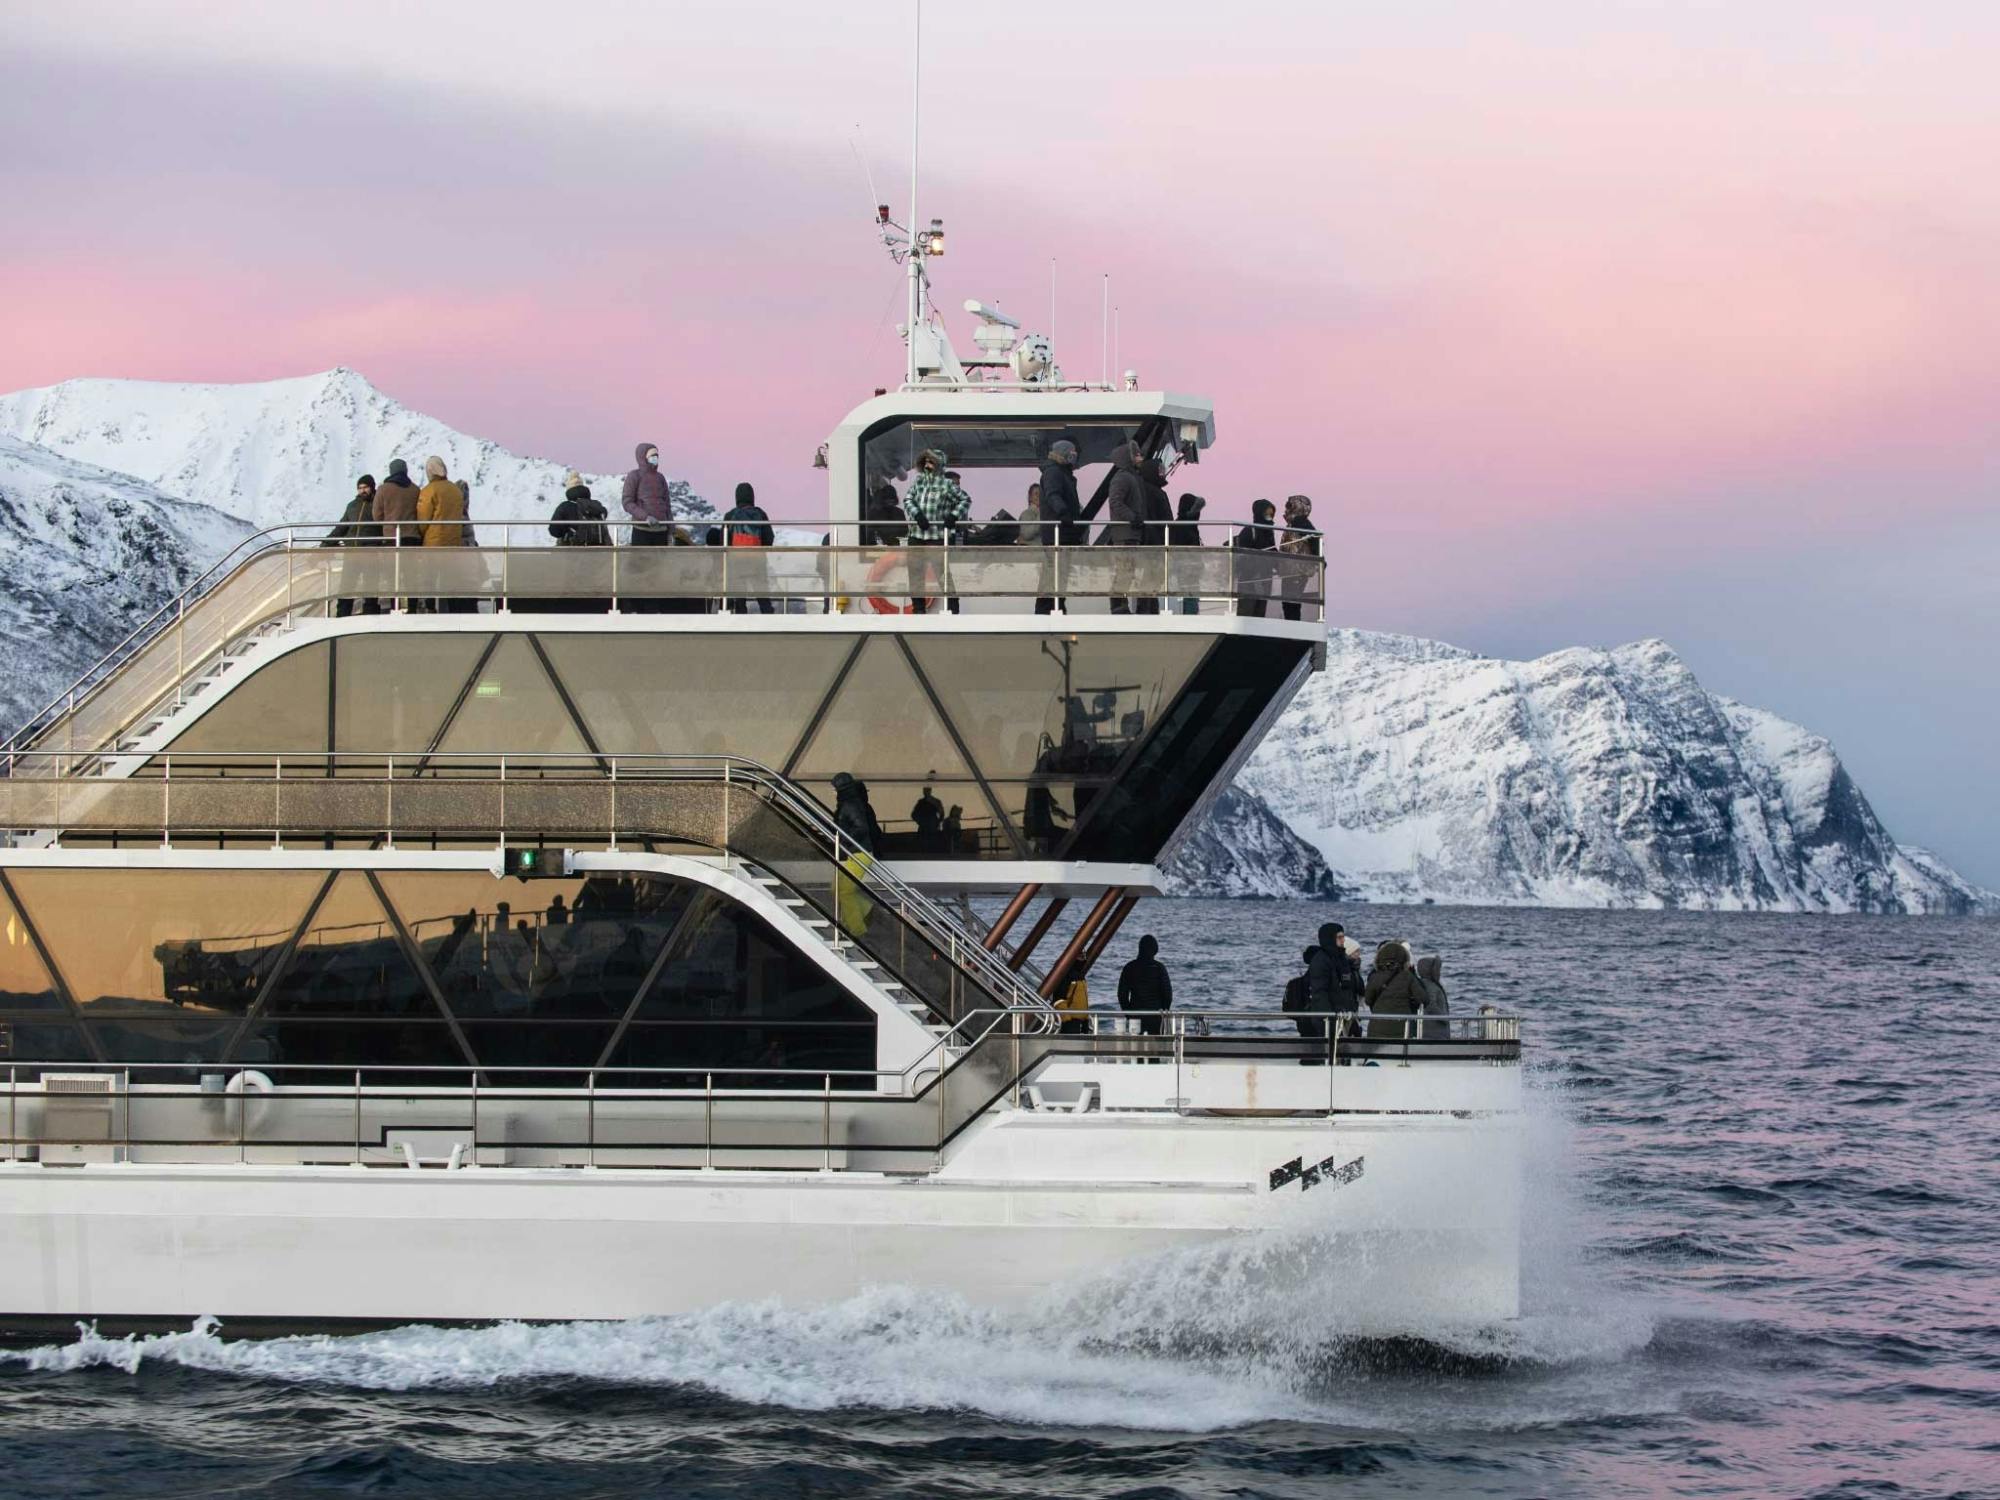 Crucero por el fiordo de Tromsø y la vida silvestre